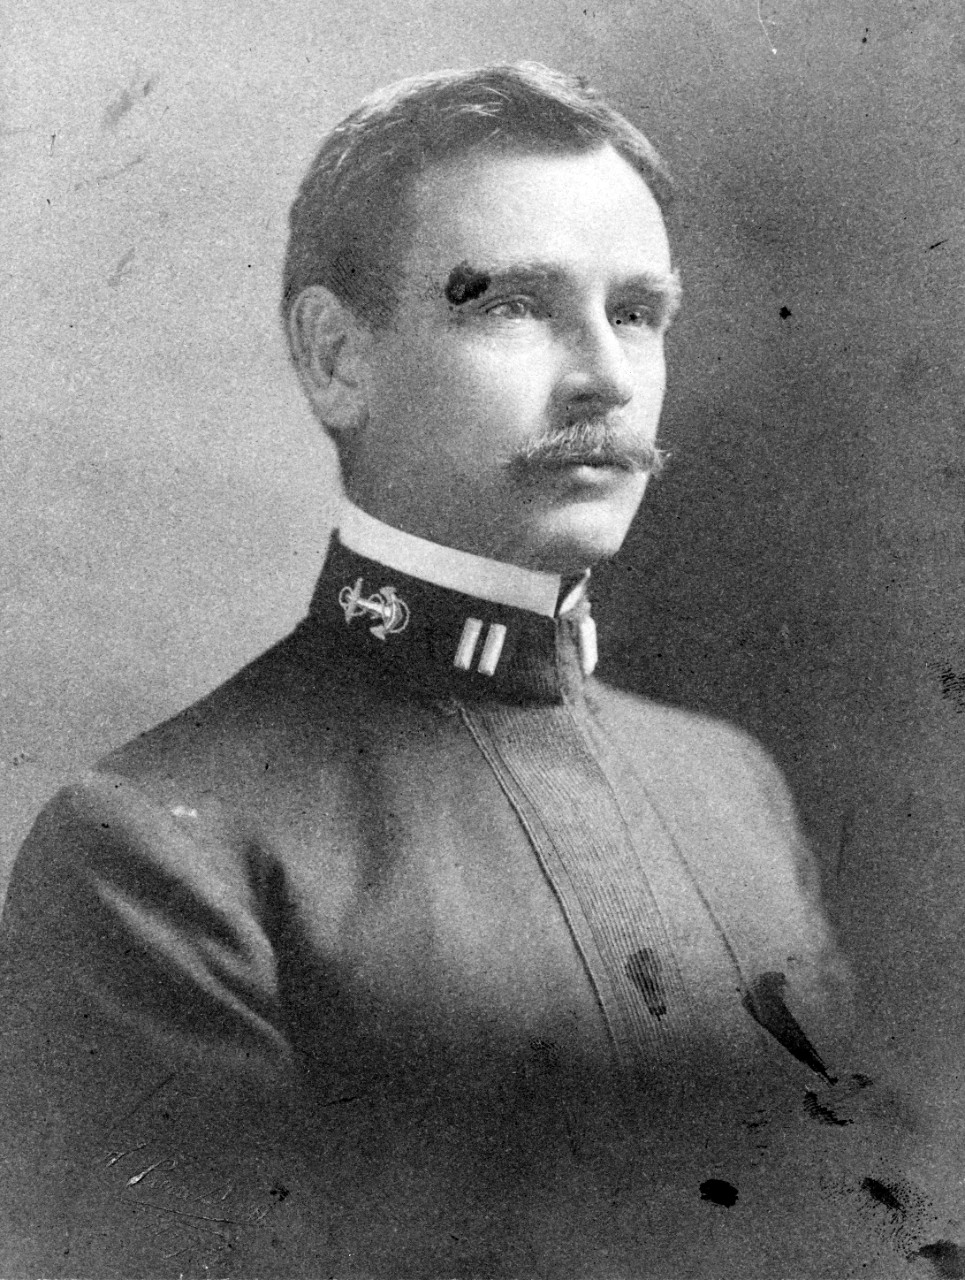 Lieutenant William H. Standley, USN